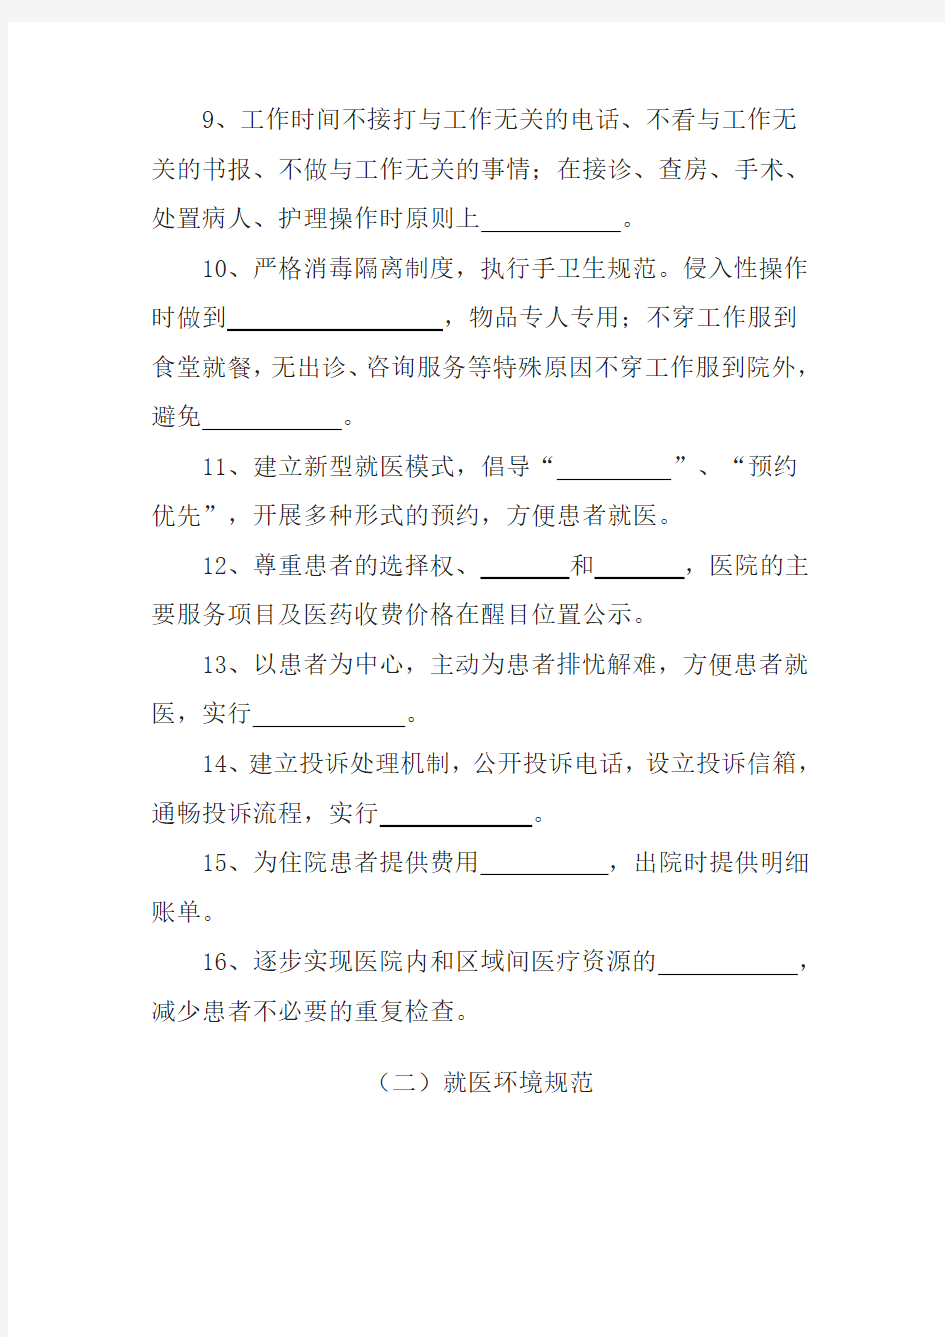 郑州市卫生系统全员全岗全程优质服务规范100条 - 考试题